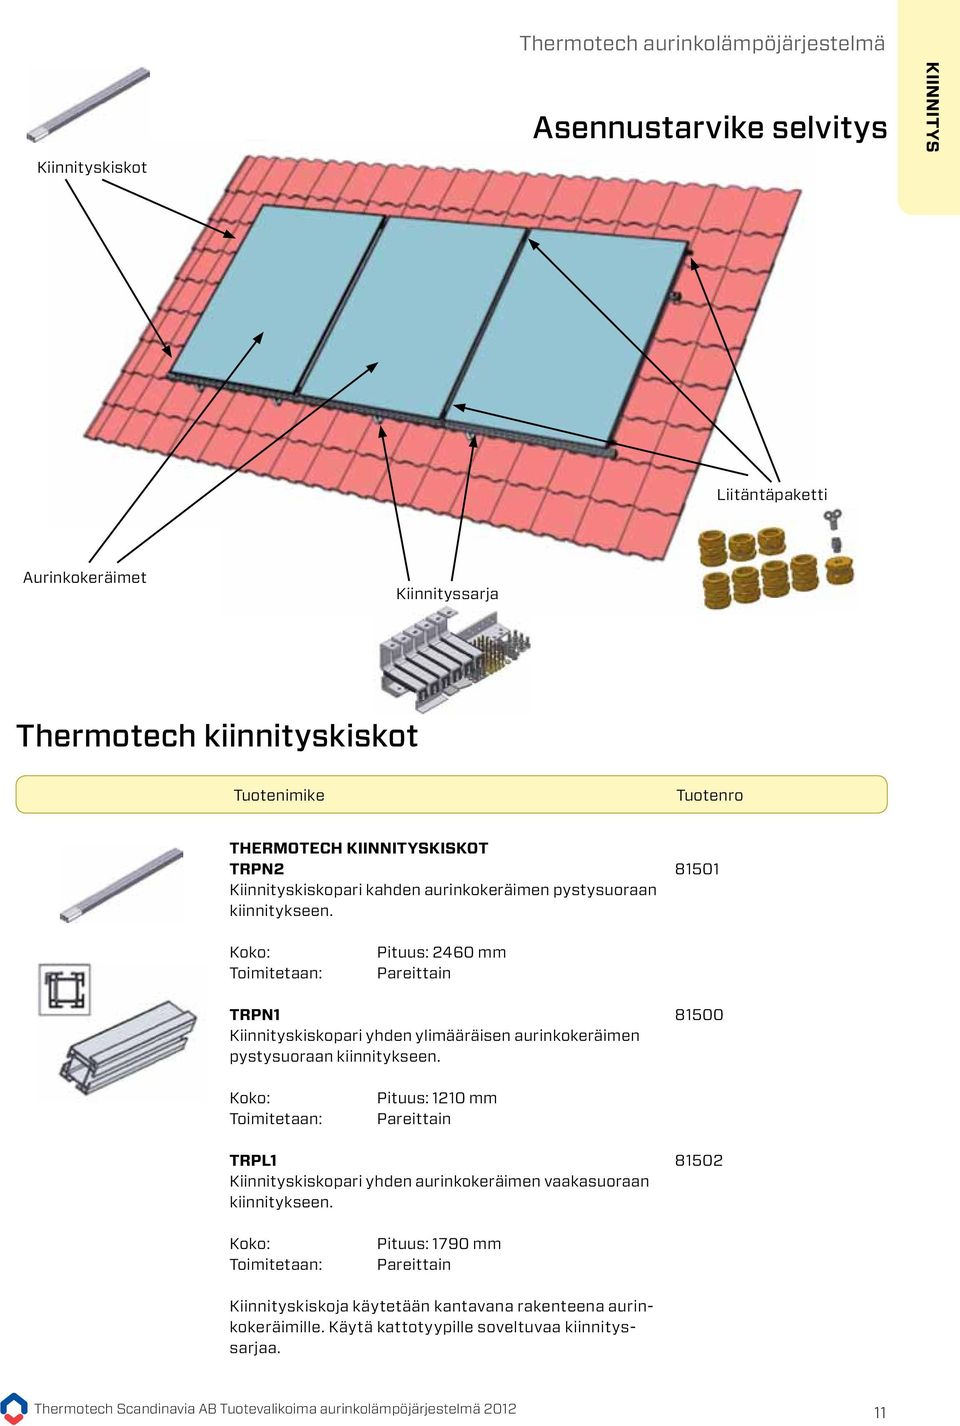 Dimensioner: Levereras: Längd: 1210 mm Parvis Liitäntäpaketti Aurinkokeräimet Thermotech montageskenor TRPL1 Monteringsskenor i par för montering av 1 solfångare horisontellt.